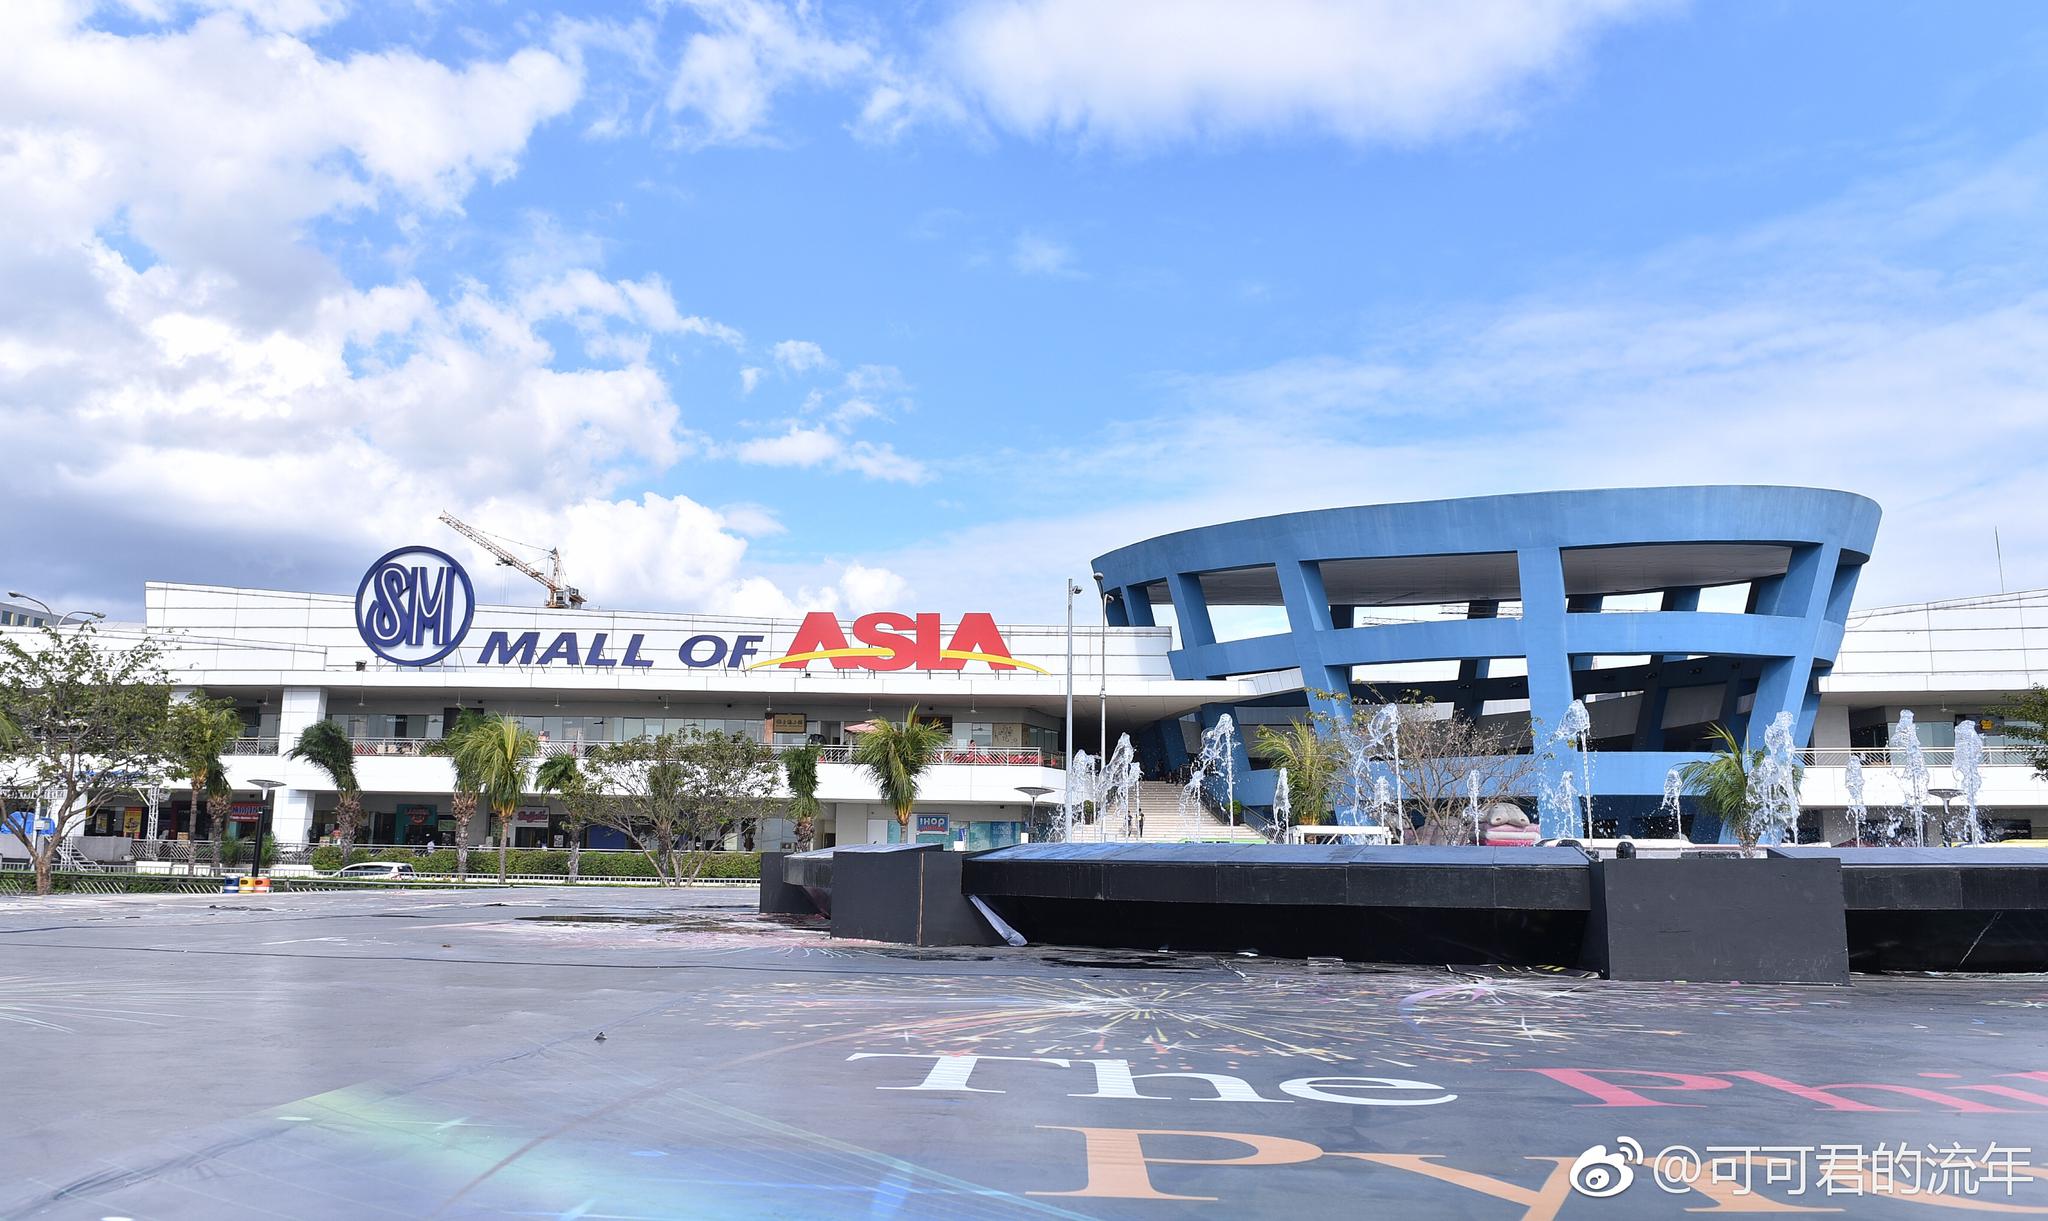 在马尼拉的SM亚洲最大的商场里,遇到一家名叫